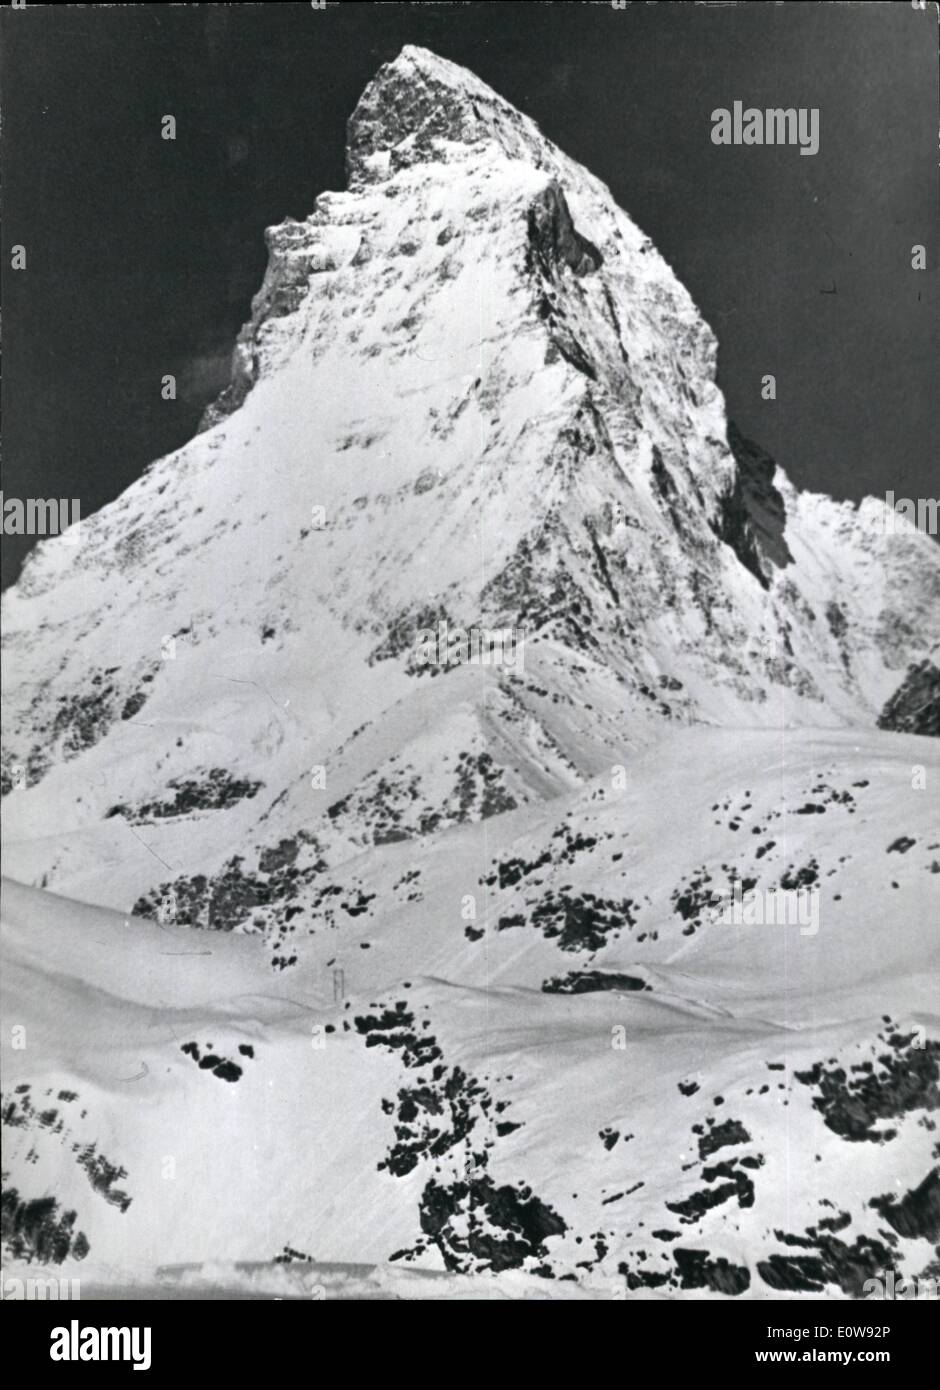 10 févr. 02, 1962 - côté nord du Cervin conquis en hiver : Pour la première fois, le mur nord de la Matterhorn peak Swi Banque D'Images